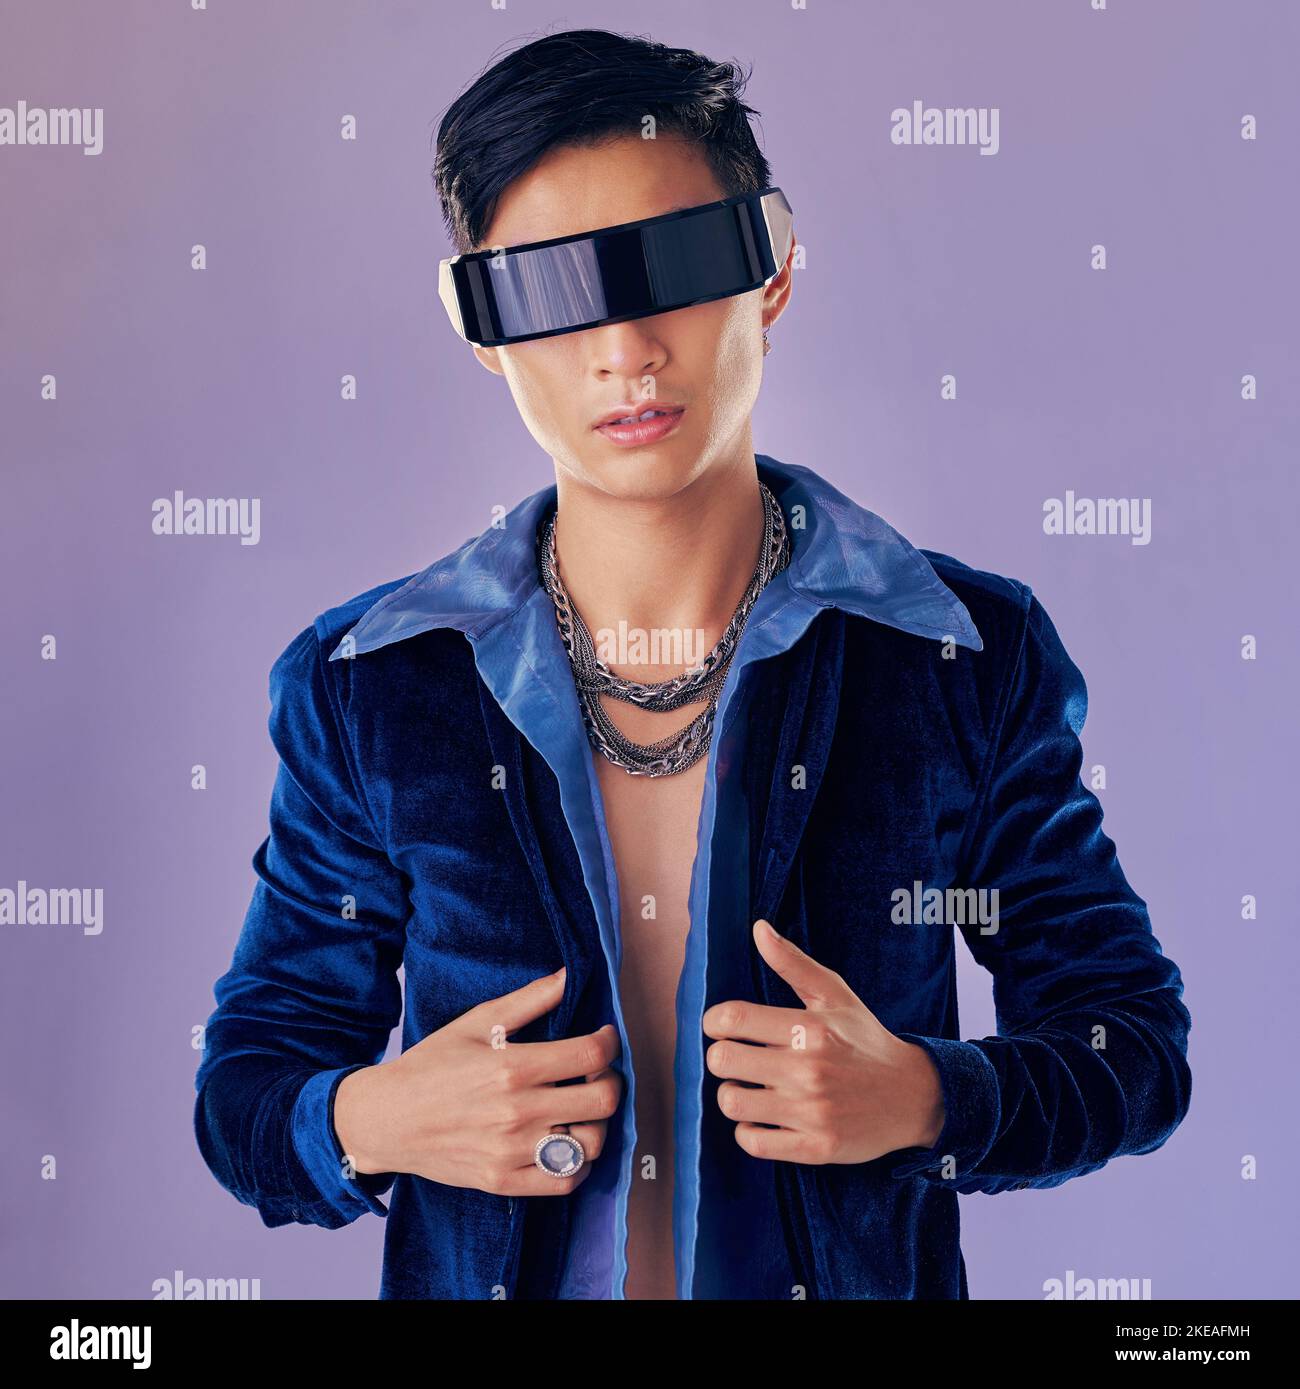 Asiatico, uomo e realtà virtuale con futuri occhiali in studio per estetica, gioielli o cyberpunk da parete lavanda. Modello di moda futuristico, metaverse e metal Foto Stock